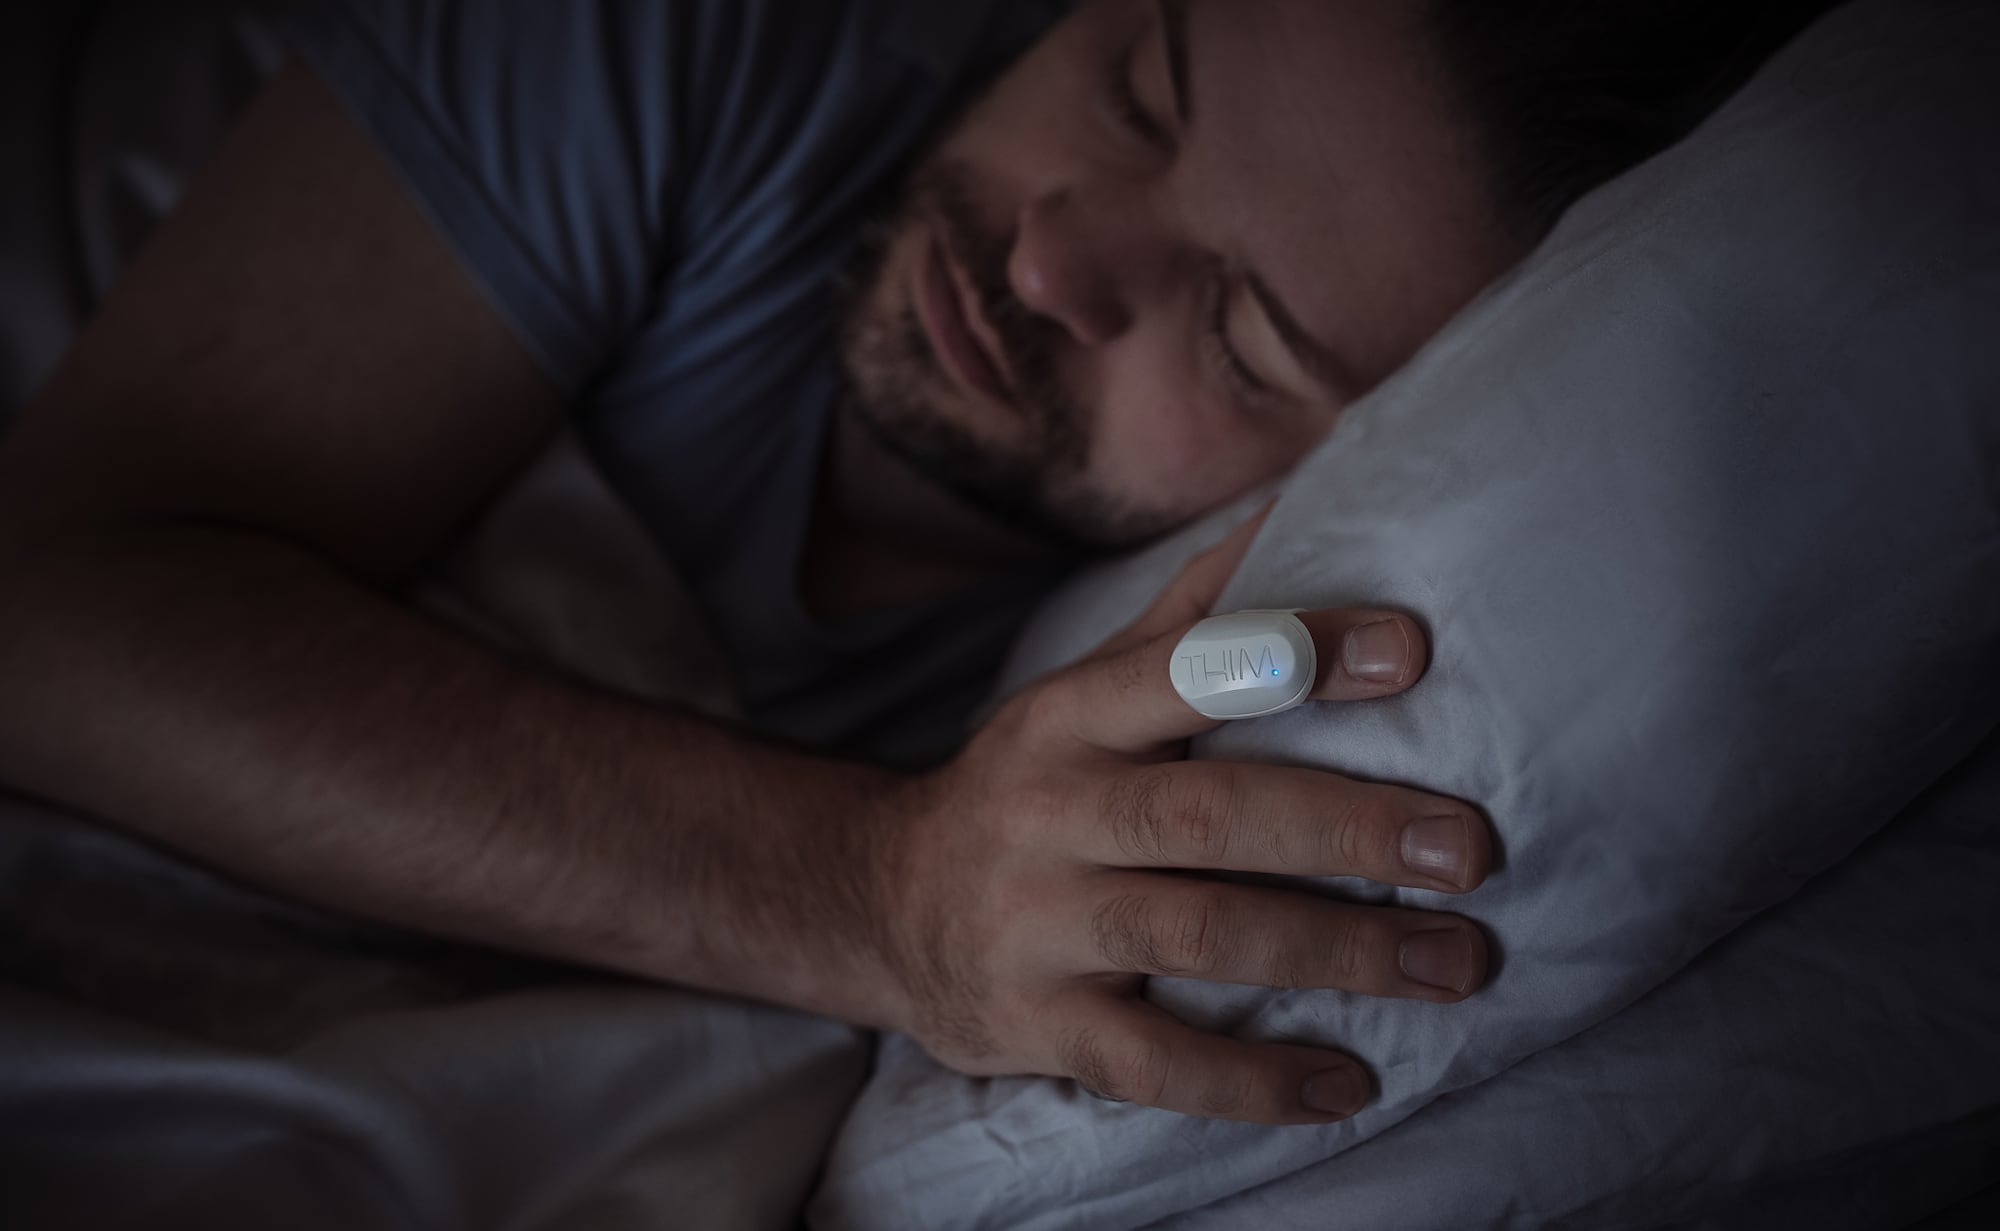 How Does Shut Eye Sleep Tracker Work